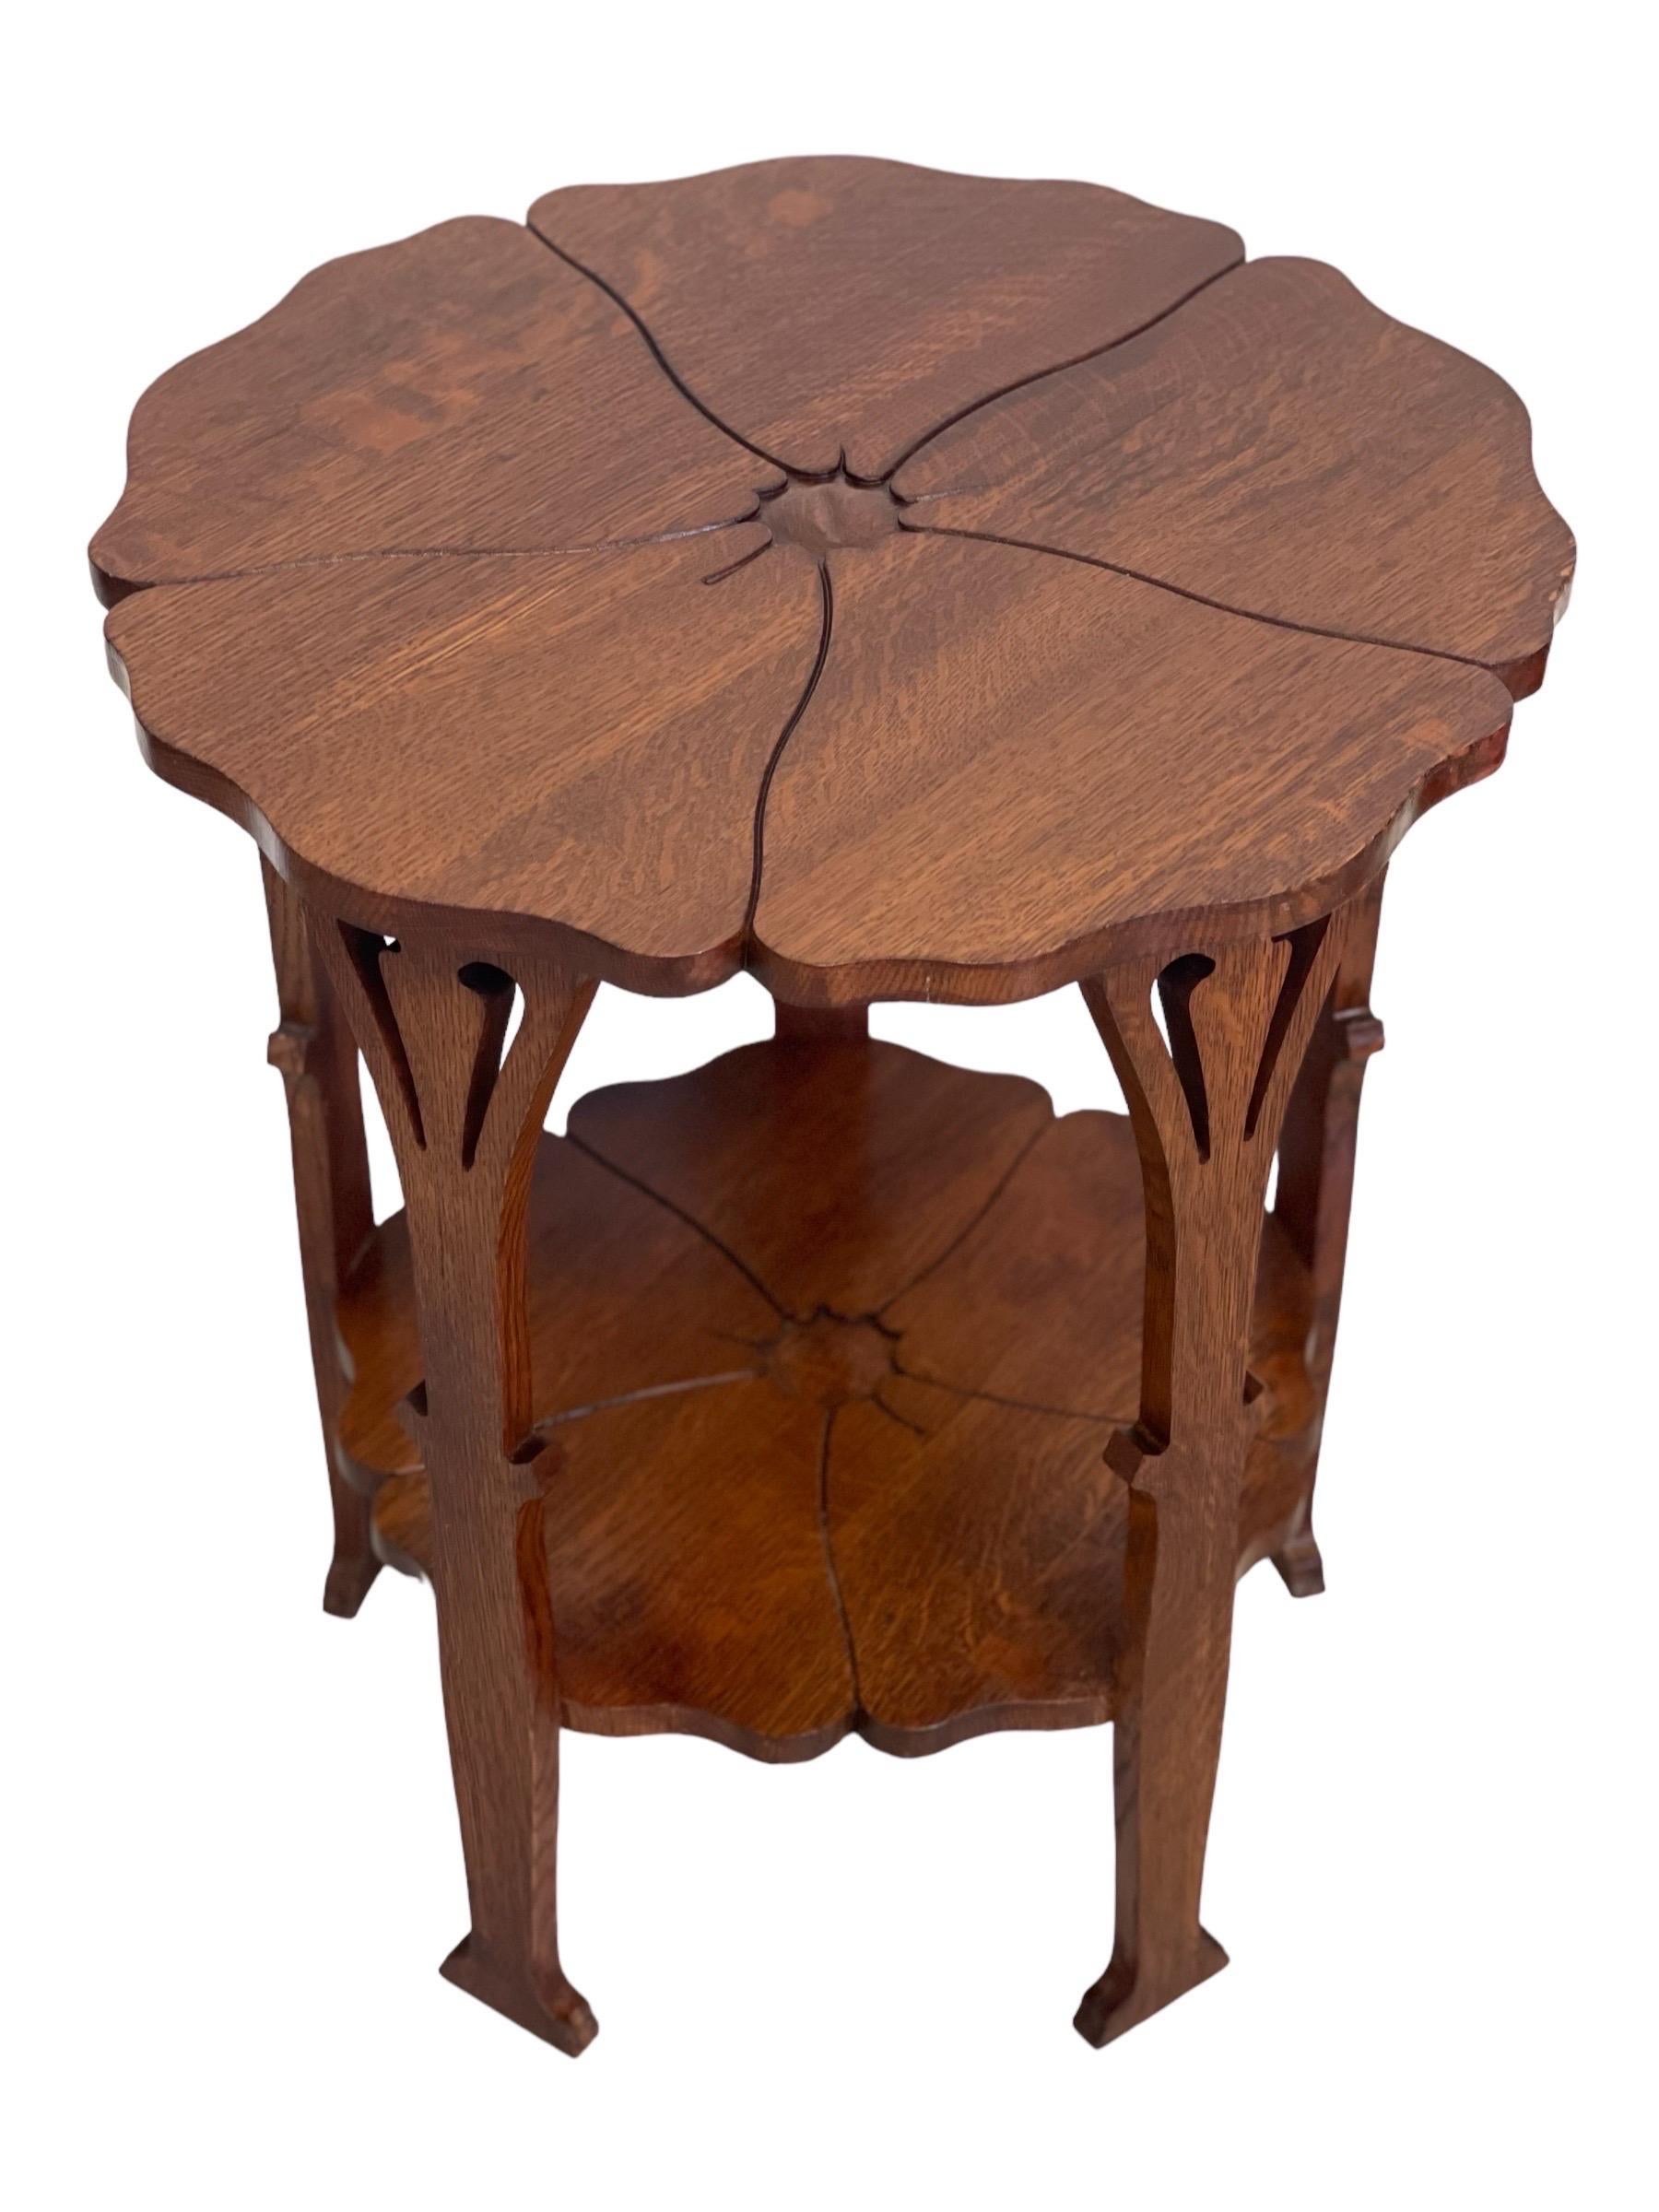 Cette table Poppy de Gustave Stickley, au design délicat, a été produite pendant une très courte période, à partir de 1900. Son design révèle les racines anglaises du mouvement Arts and Crafts américain en plein essor. L'un des nombreux designs/One